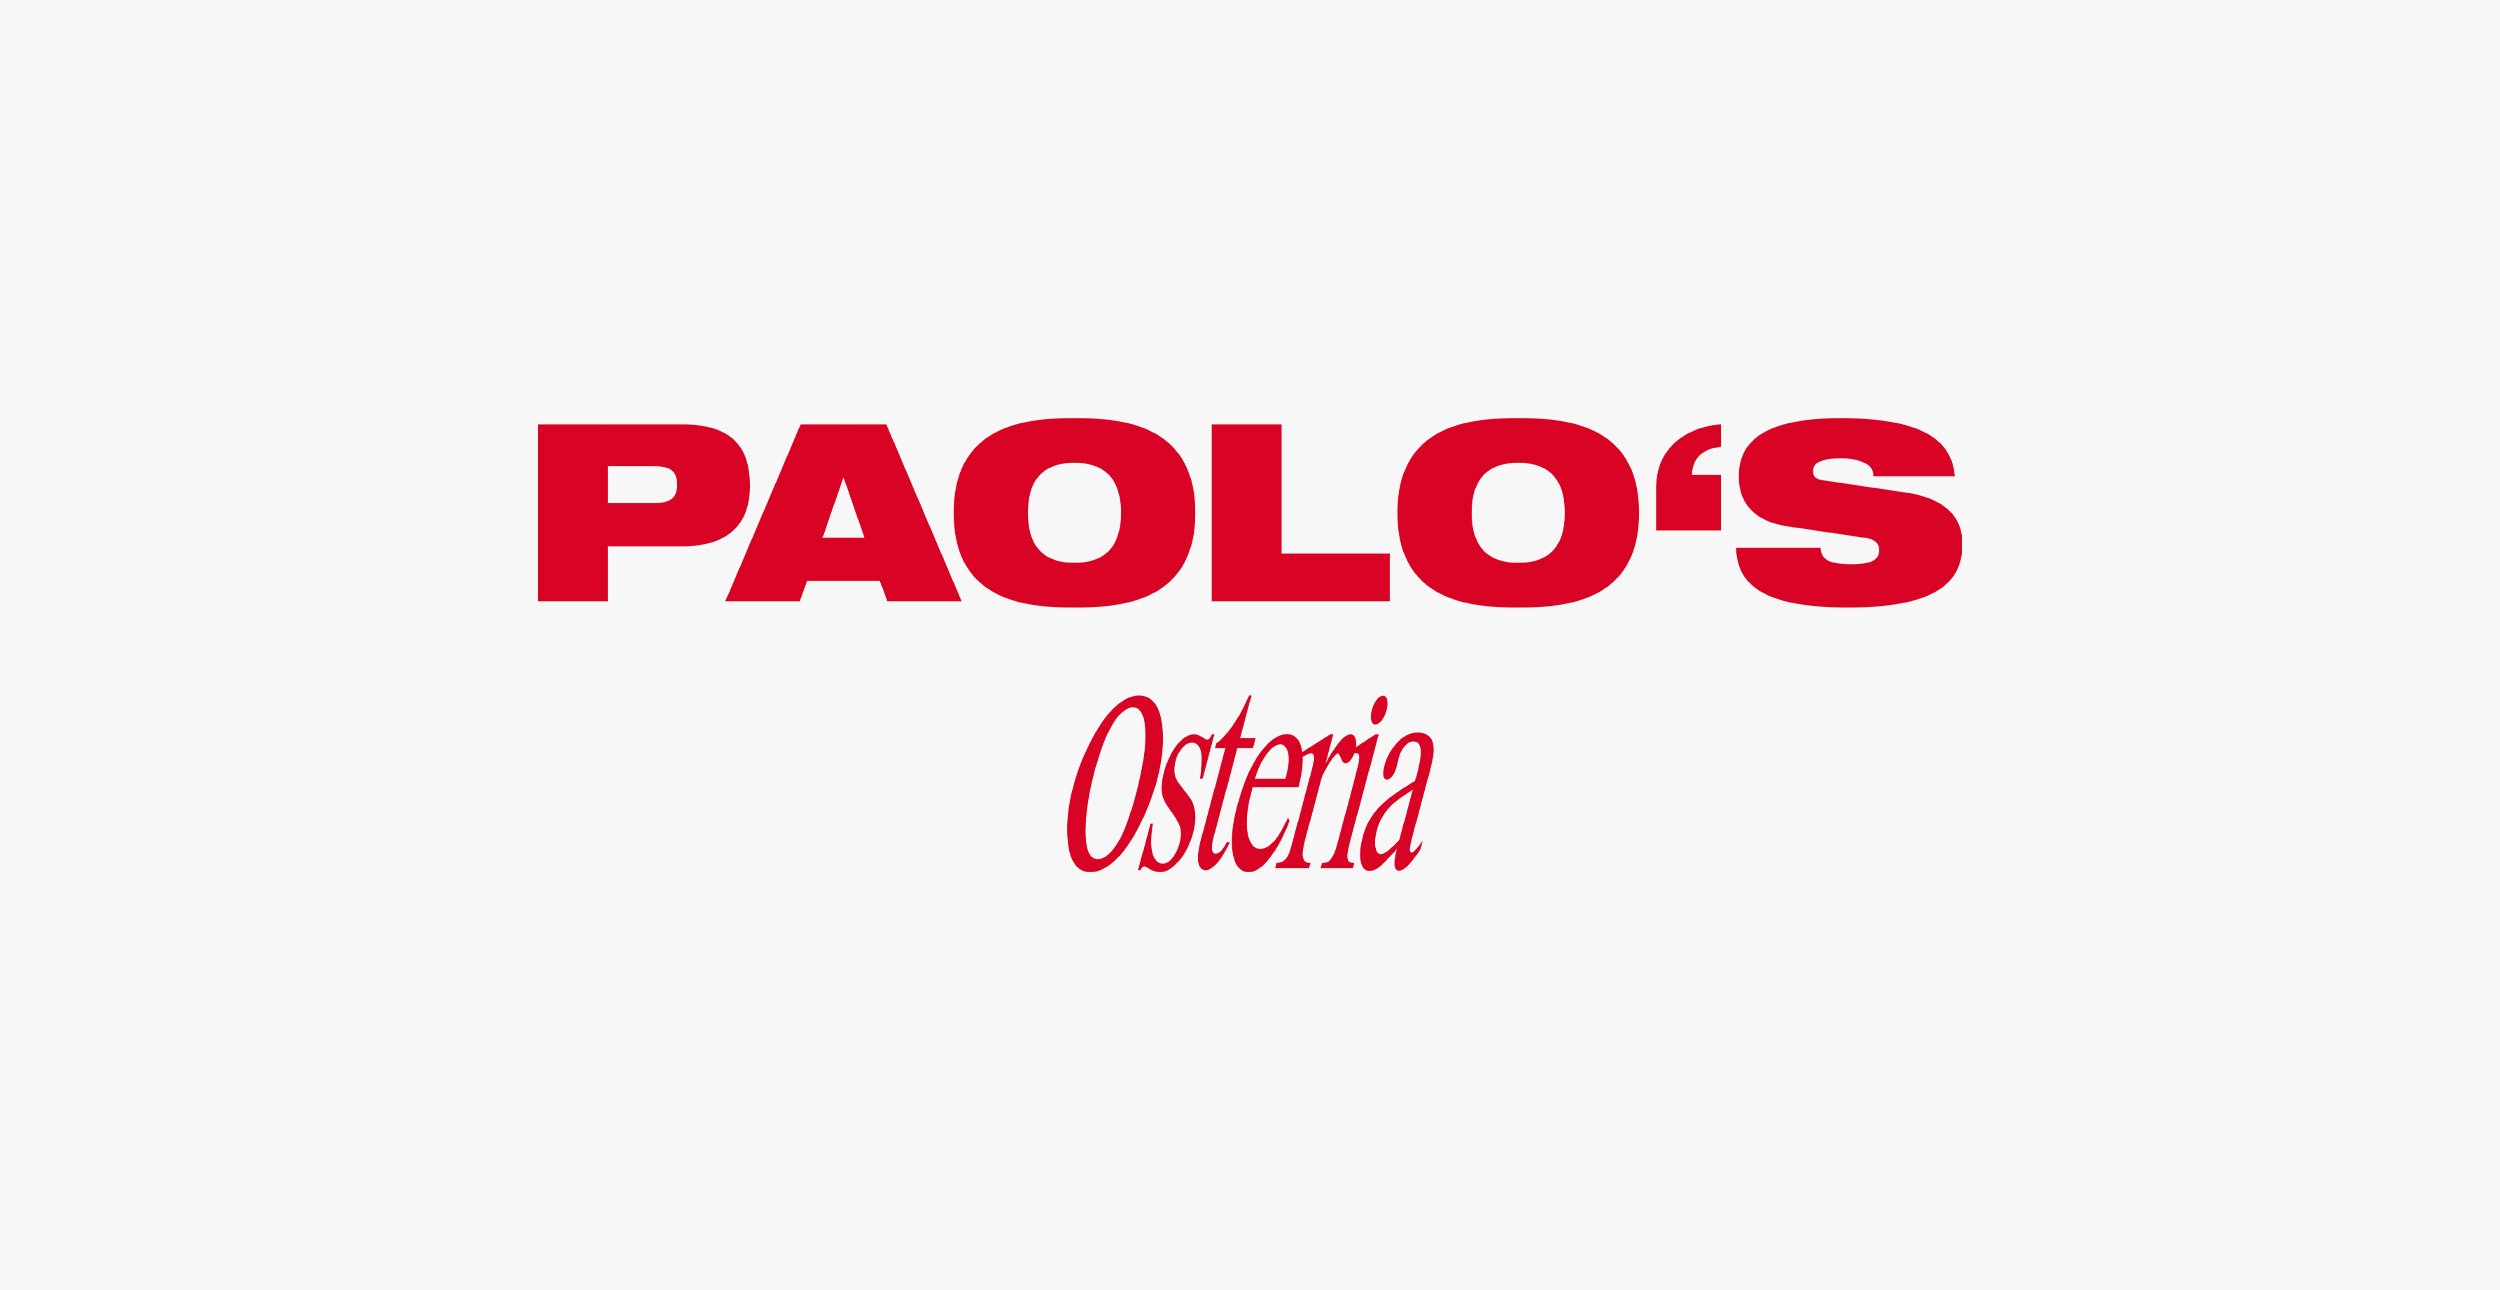 paolo_logo1.jpg